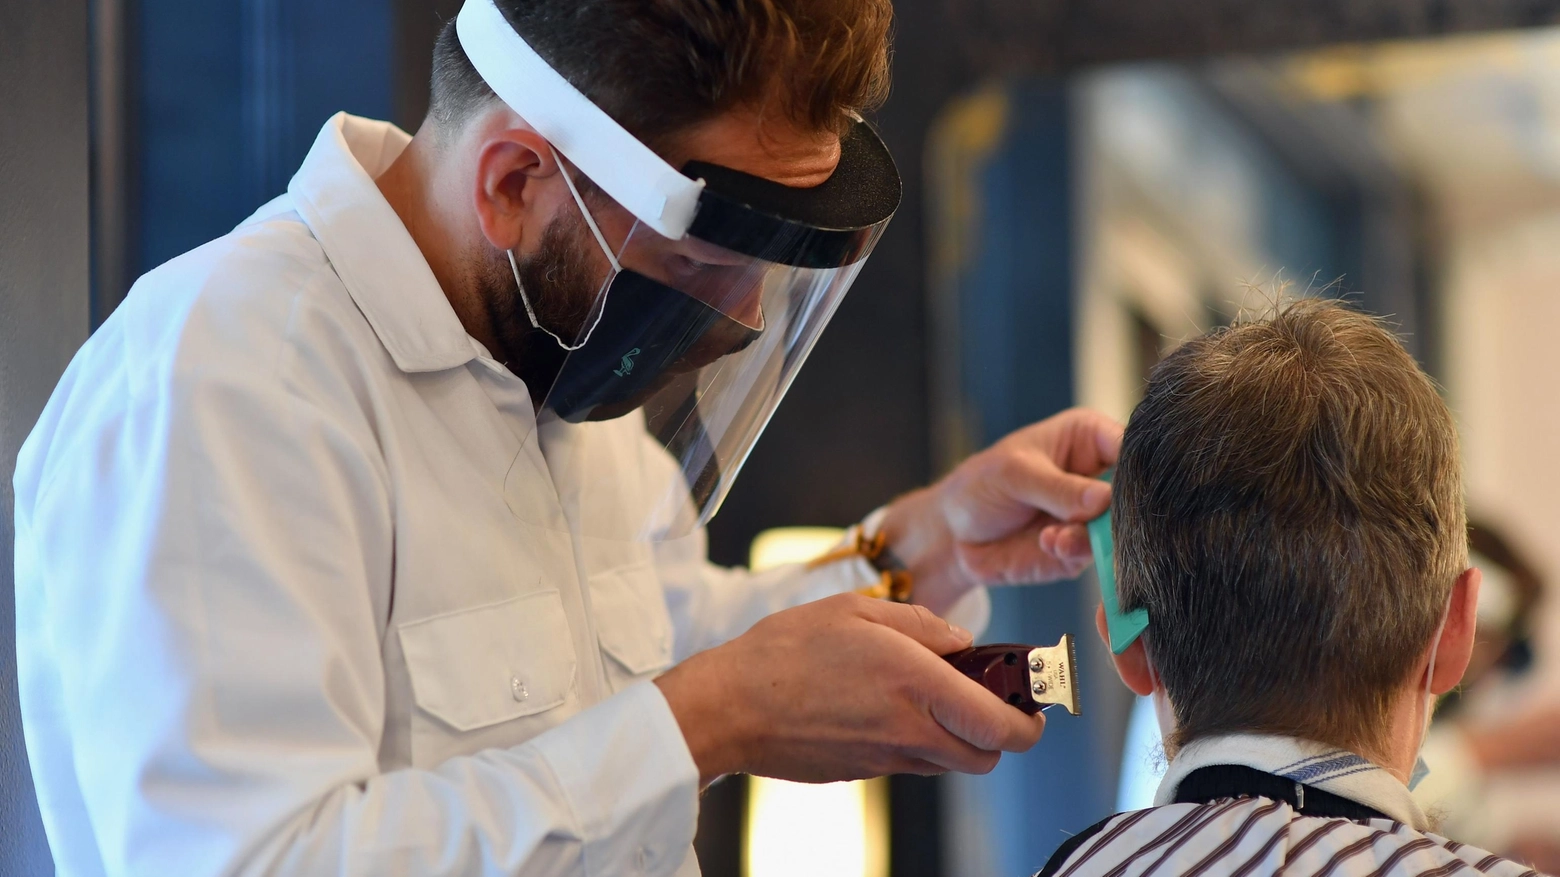 Napoli, barbiere lavorerà gratis per aiutare una donna malata: l’iniziativa